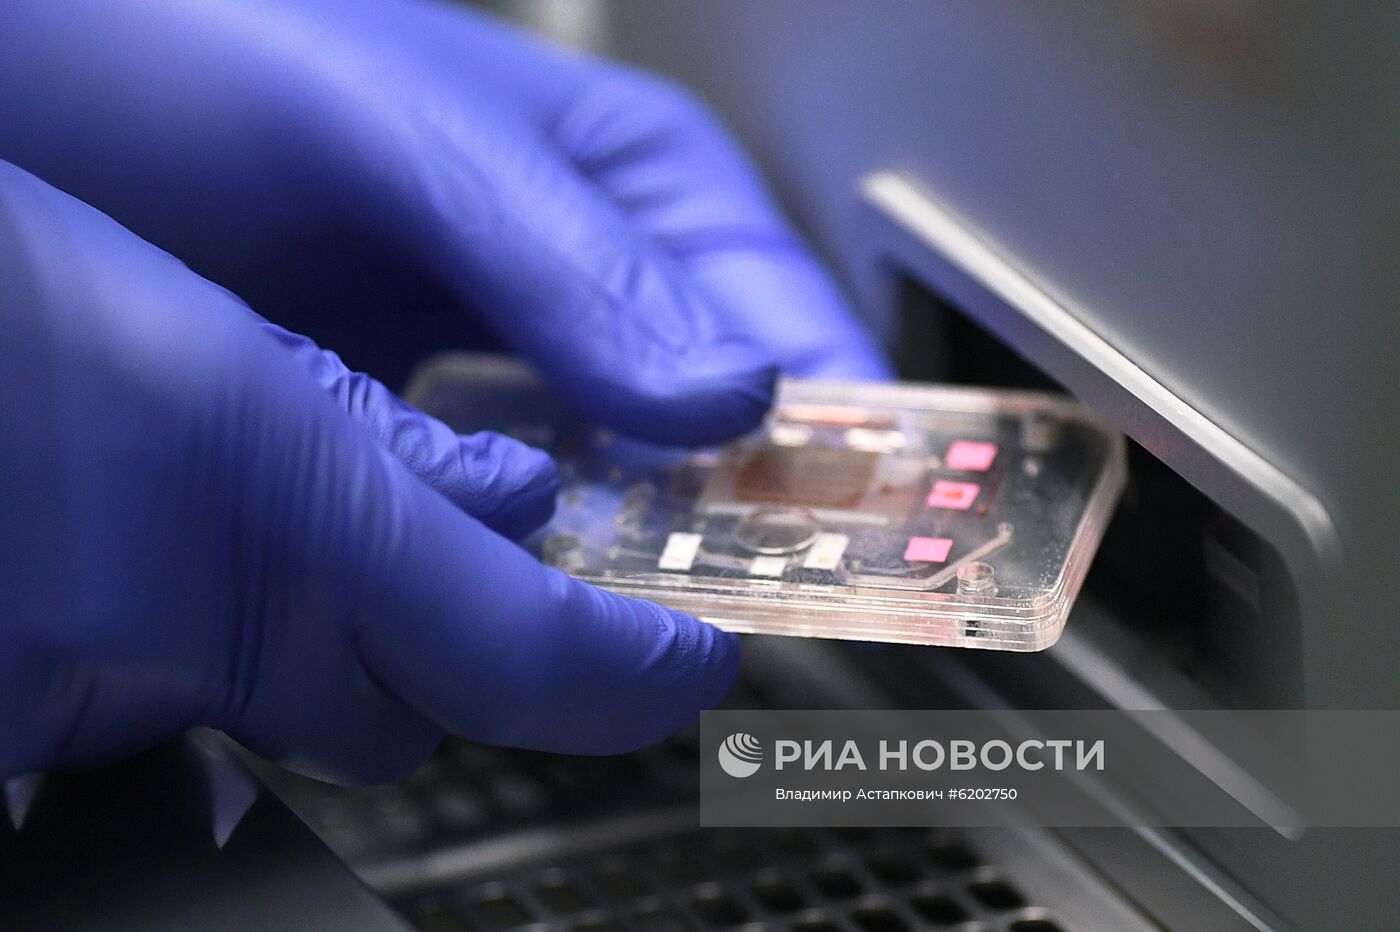 Демонстрация диагностики для обнаружения коронавируса центром ФМБА России